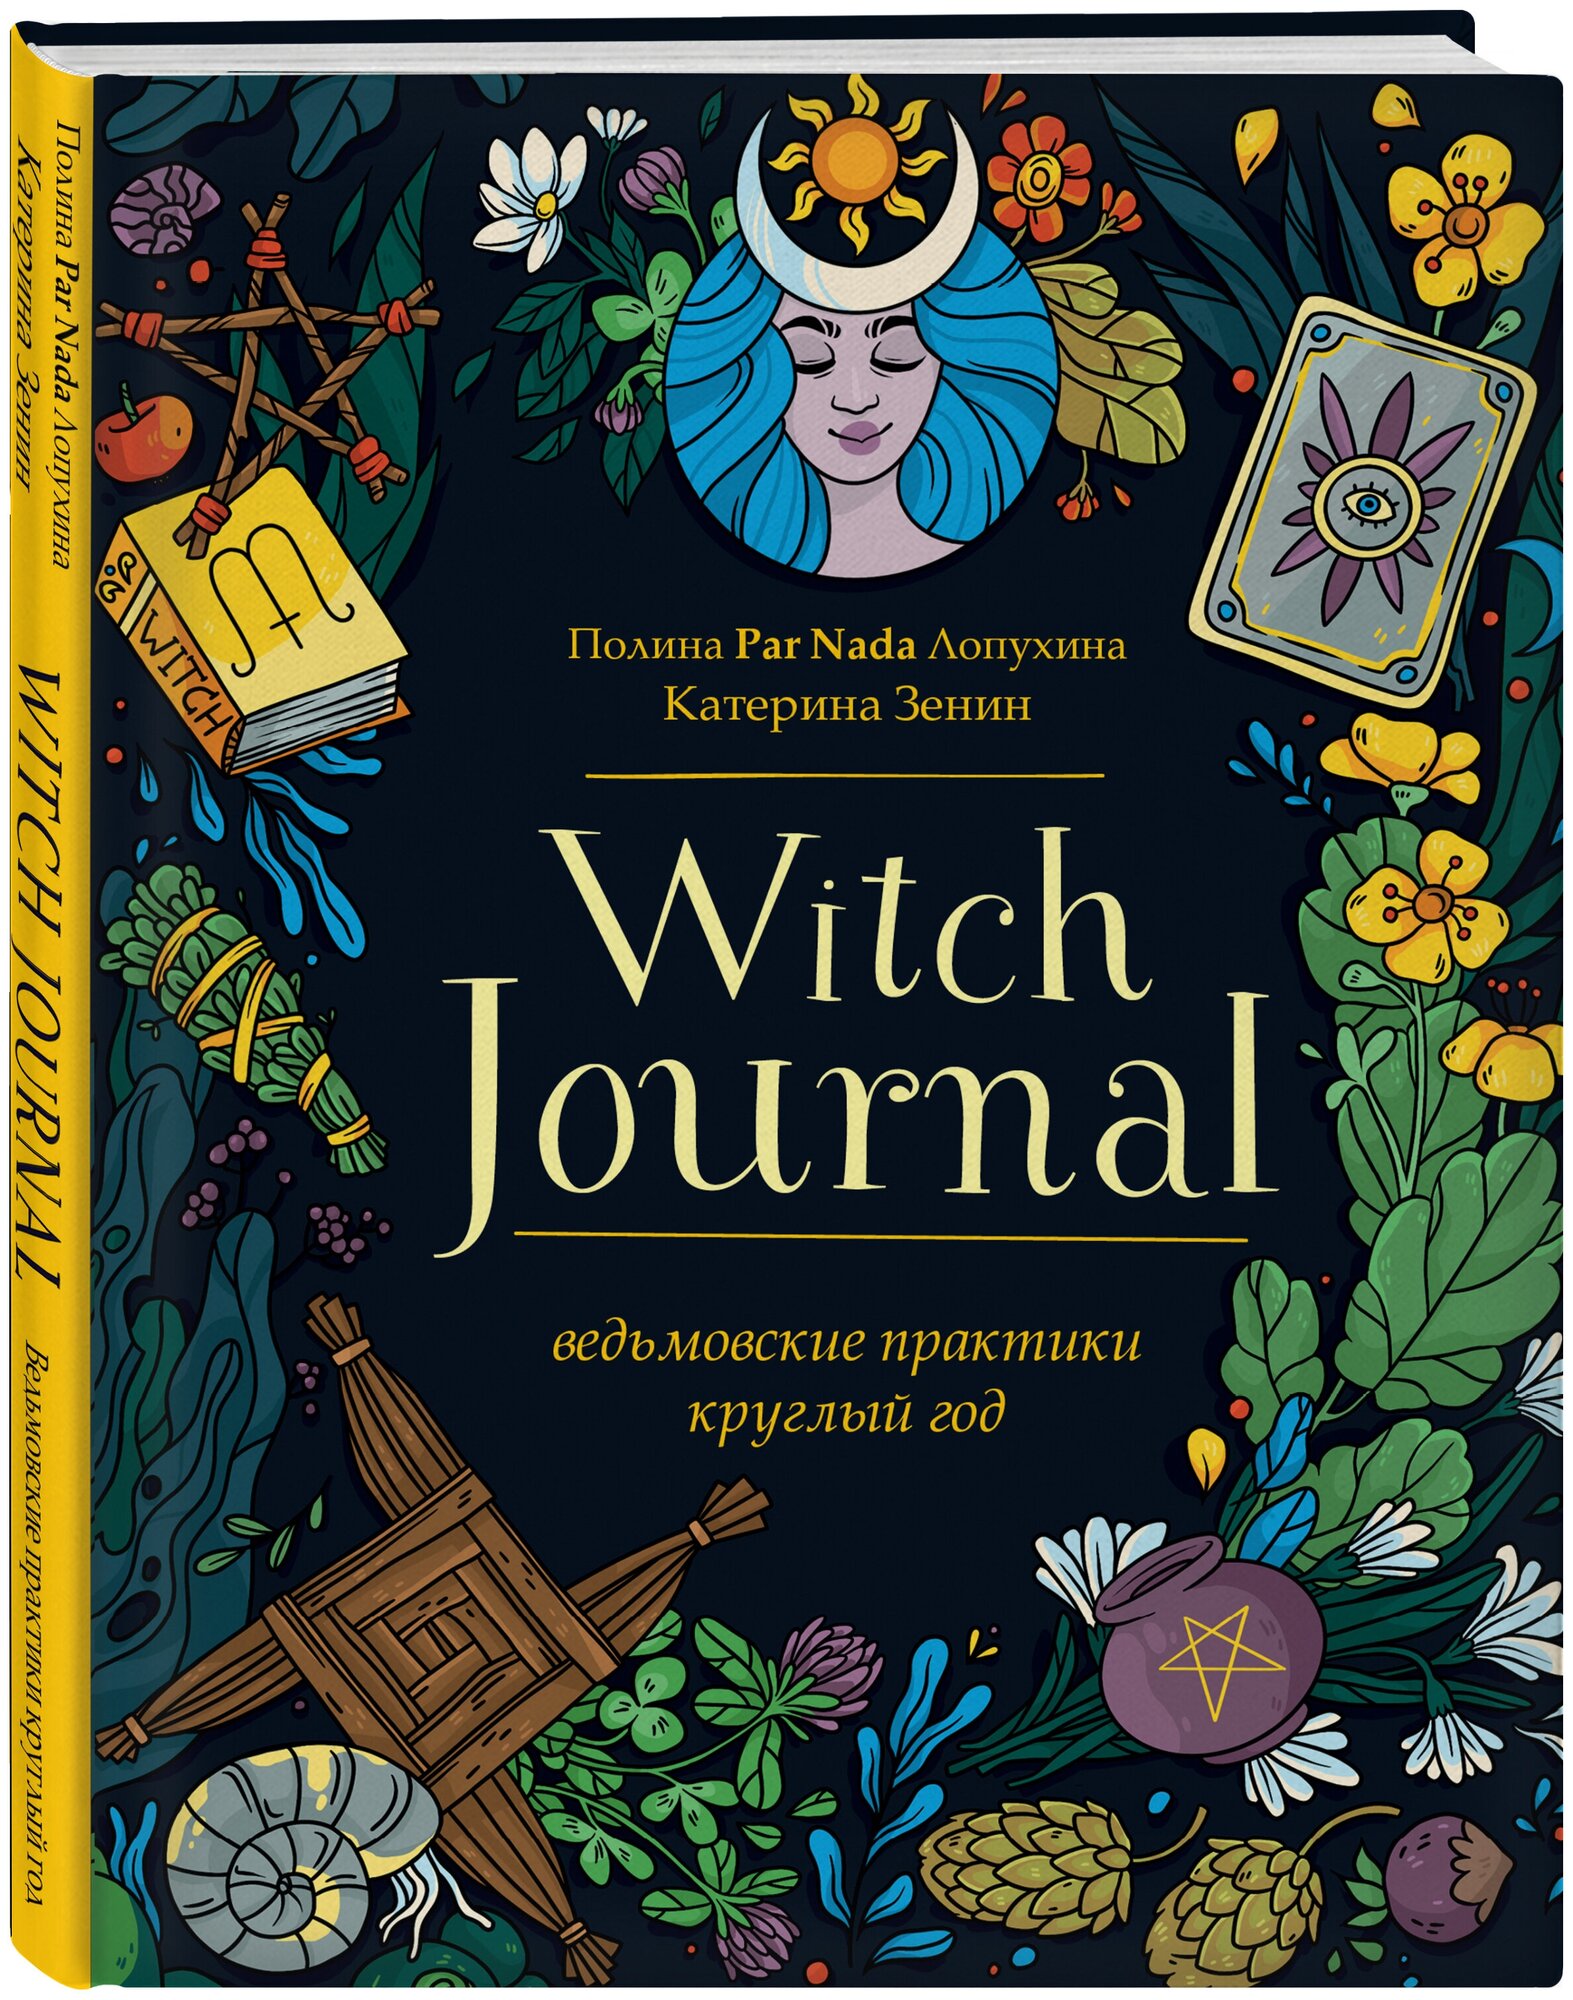 Witch Journal. Ведьмовские практики круглый год - фото №1